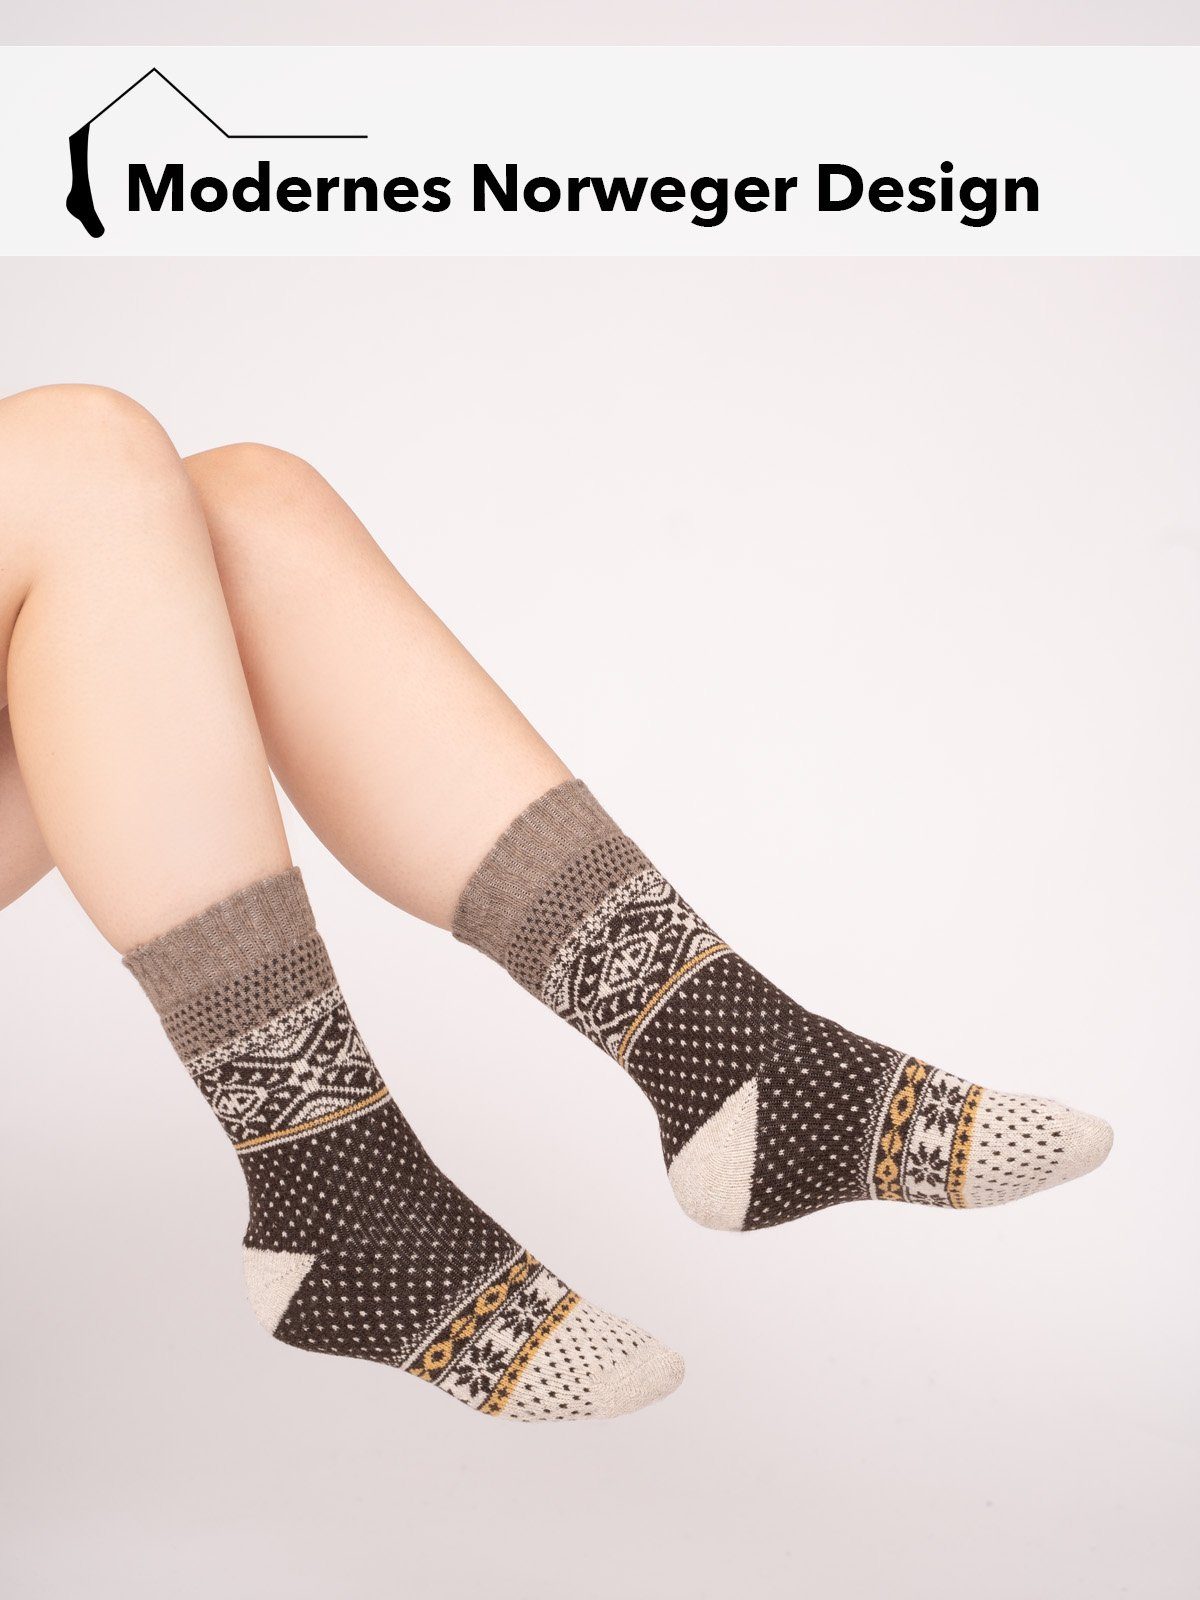 1 Norwegischem In Nordic Warm Hyggelig Wollsocke (Paar, HomeOfSocks Kuschelsocken Design Muster" Socken "Norweger Norwegersocken Braun Wollanteil 45% Paar) Mit Skandinavische Dicke